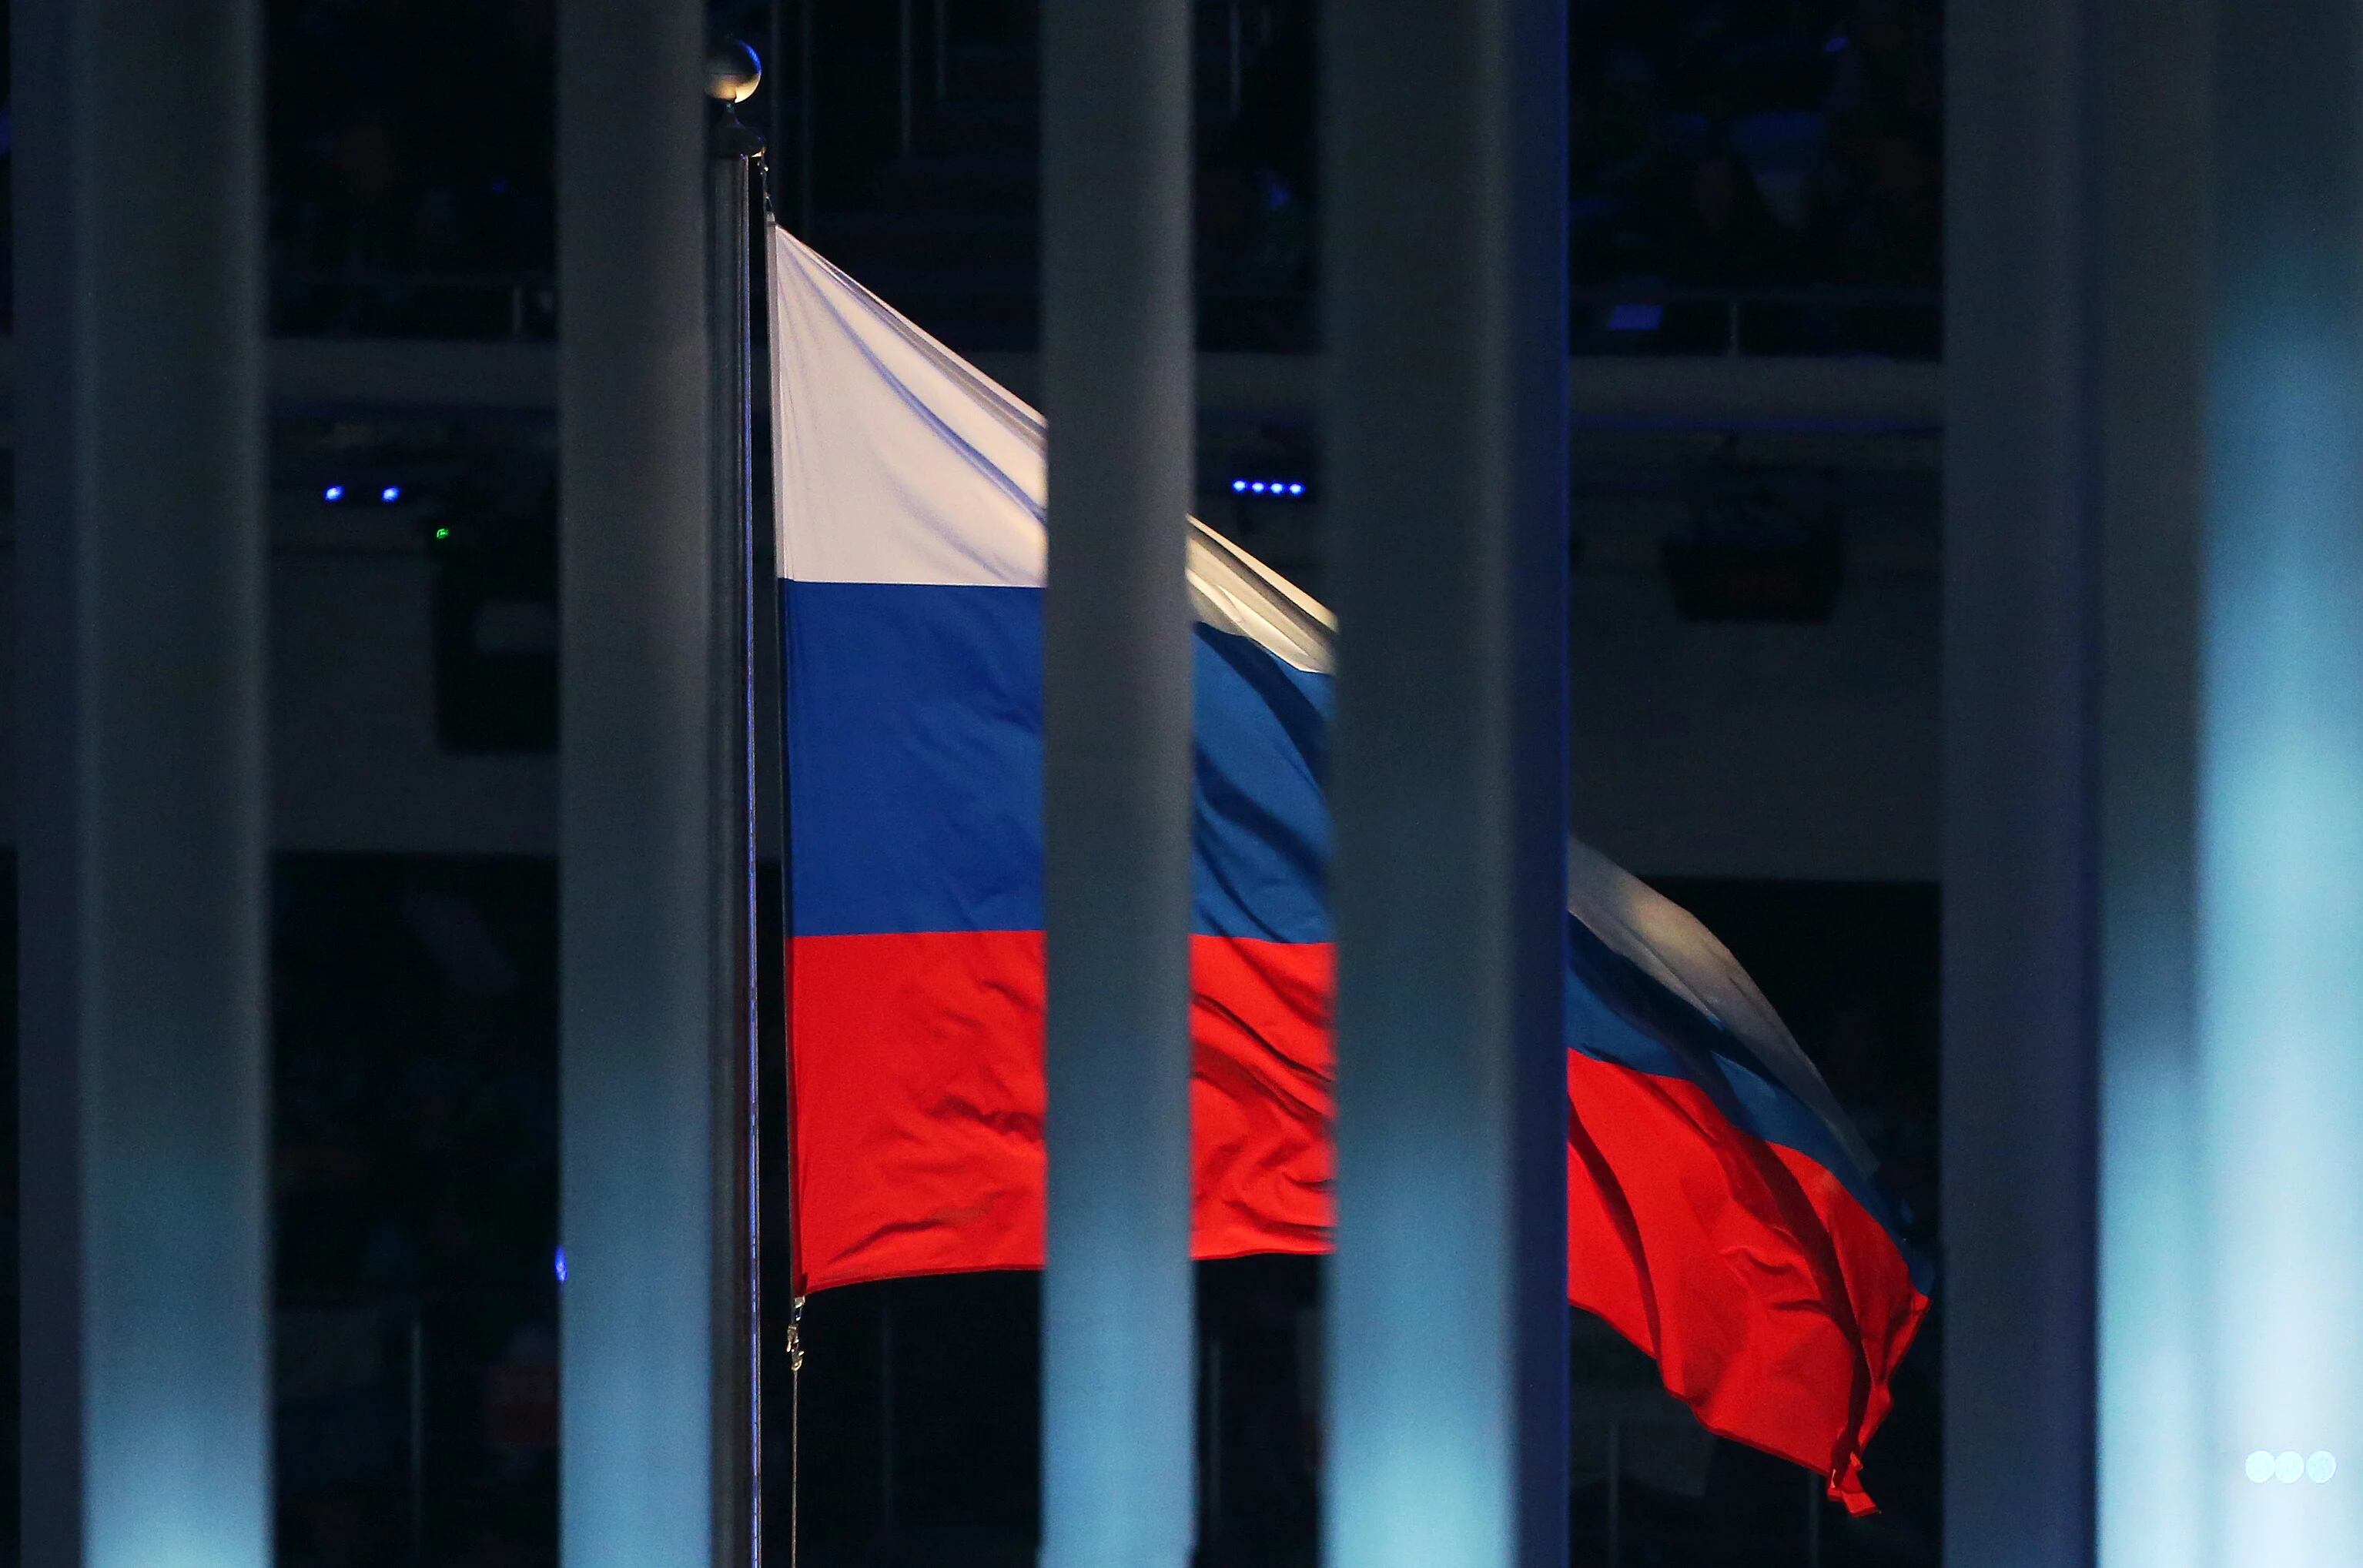 07/03/2014 Bandera de Rusia
POLITICA DEPORTES
Jan Woitas/dpa-Zentralbild/dpa
